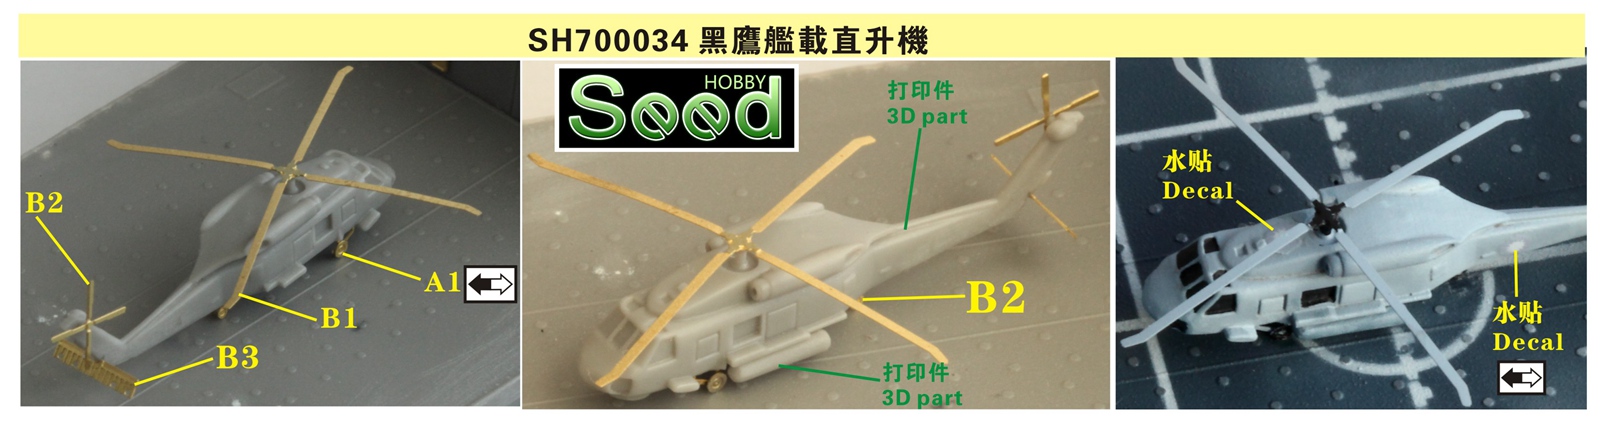 1/700 台湾地区 SH-60F 黑鹰舰载直升机(4架)3D打印产品